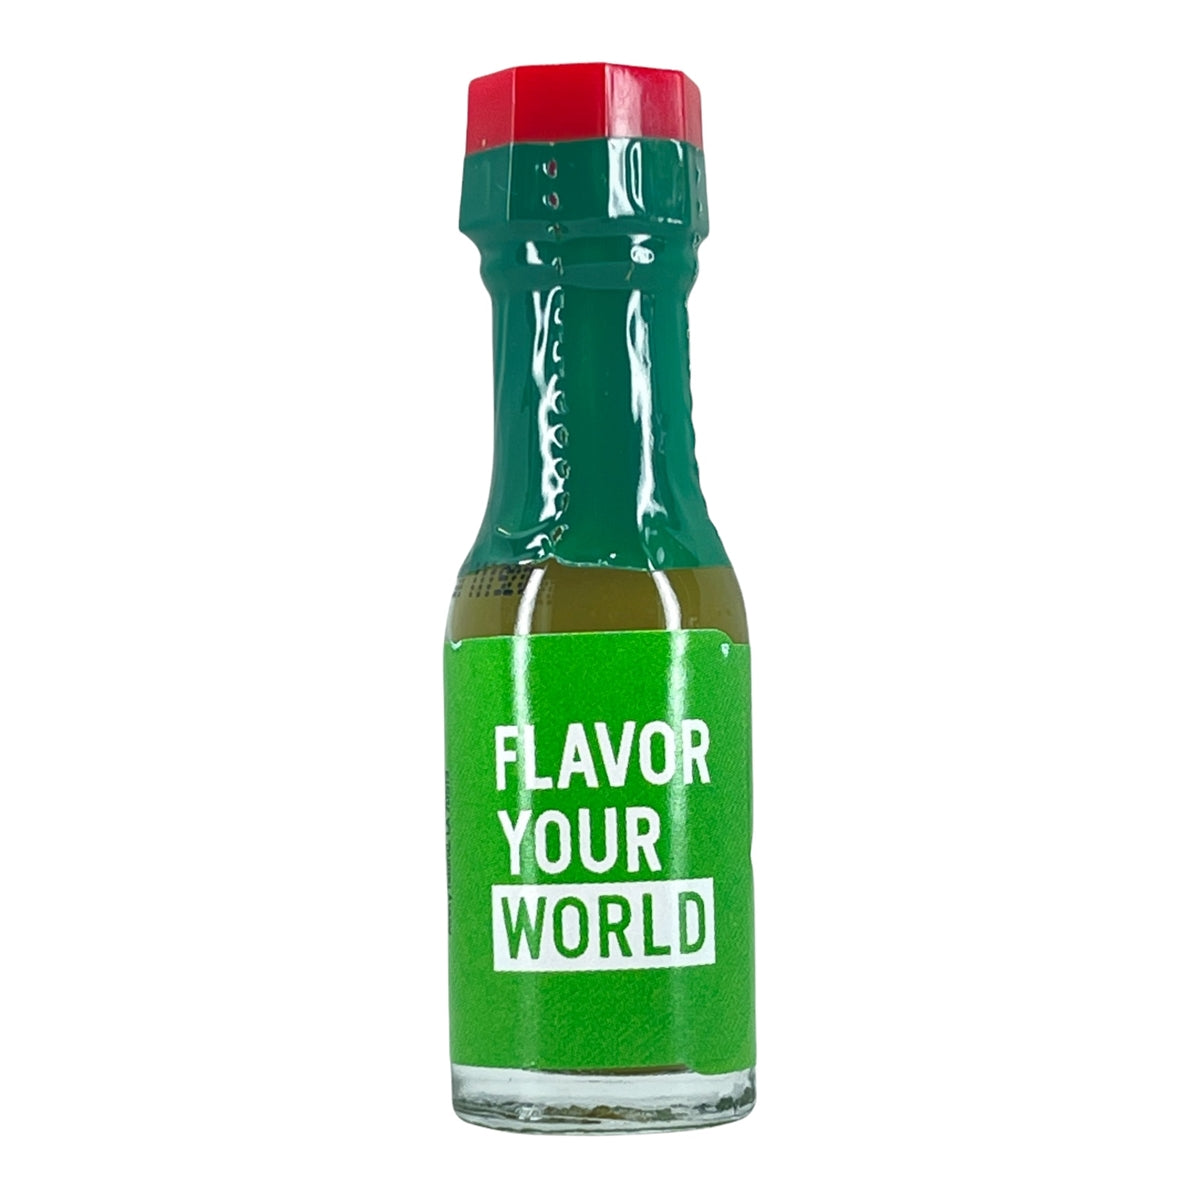 Condiment - 12 Tabasco Pepper Sauce Bottles (Green Bottle)